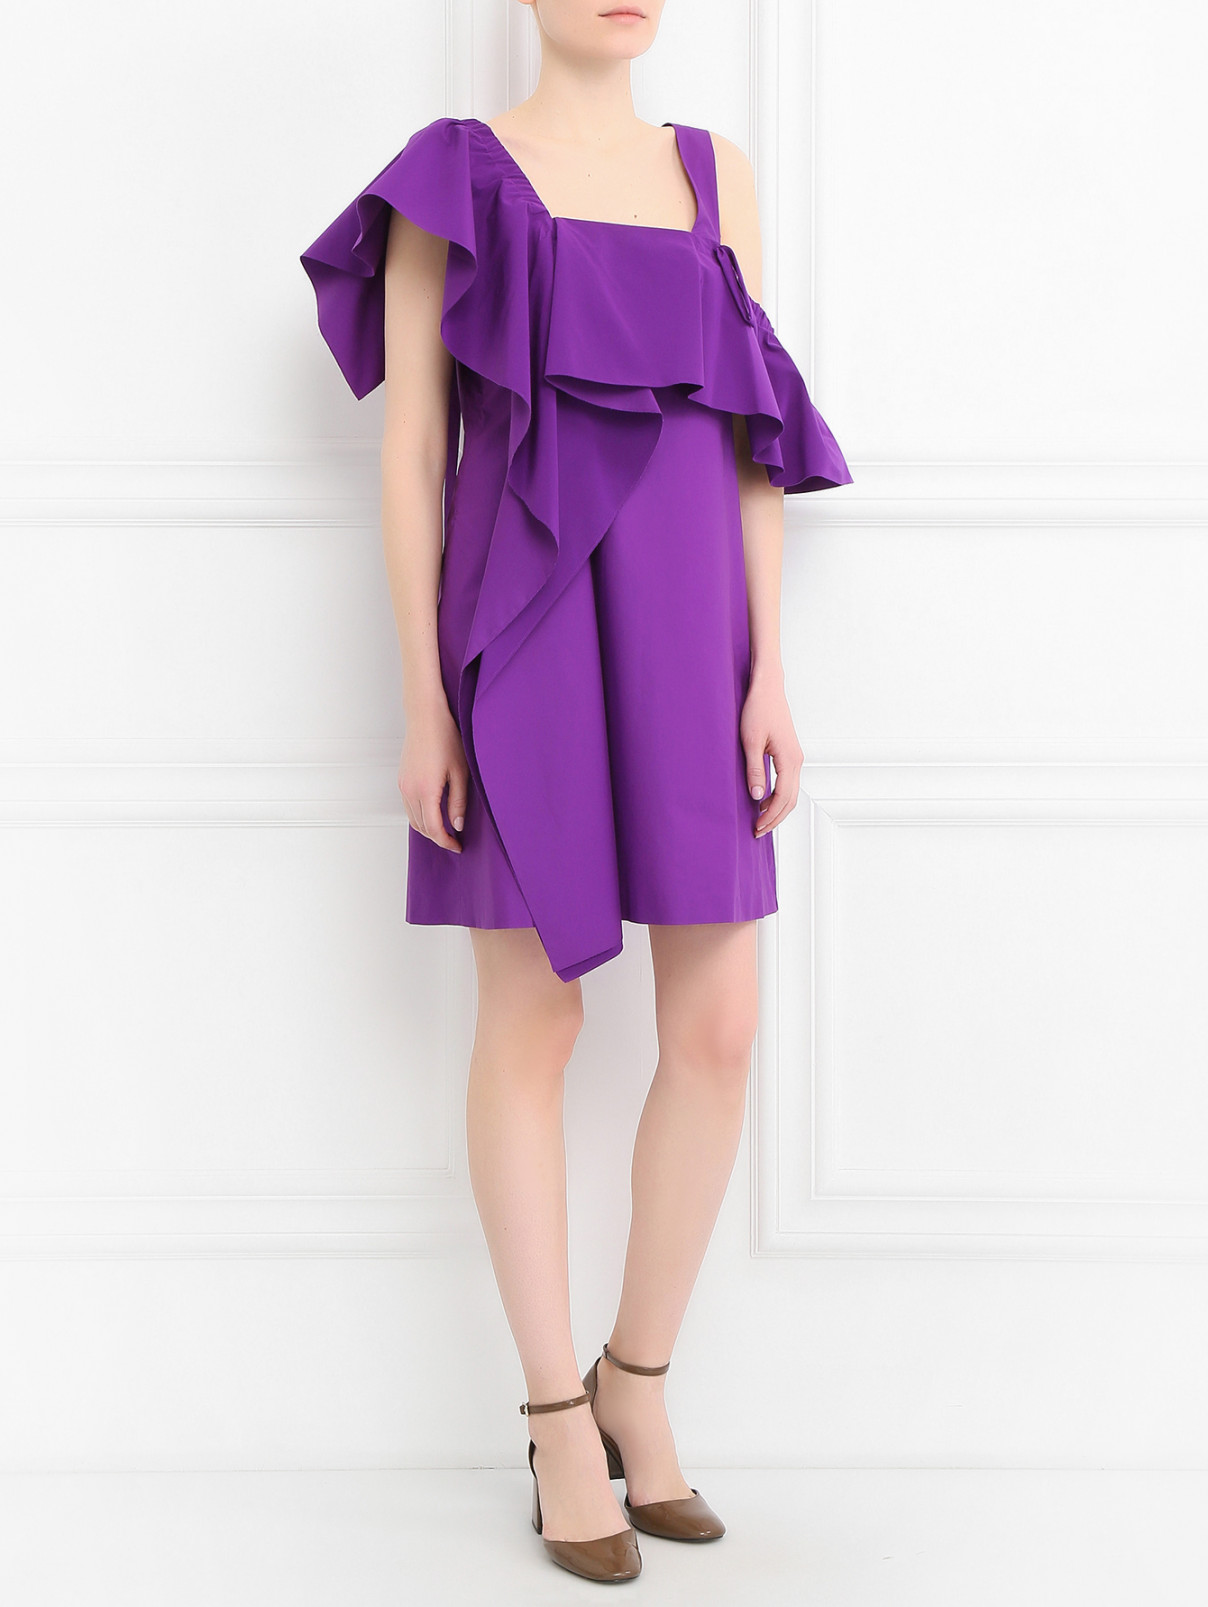 Платье-мини из хлопка с воланами Dorothee Schumacher  –  Модель Общий вид  – Цвет:  Фиолетовый